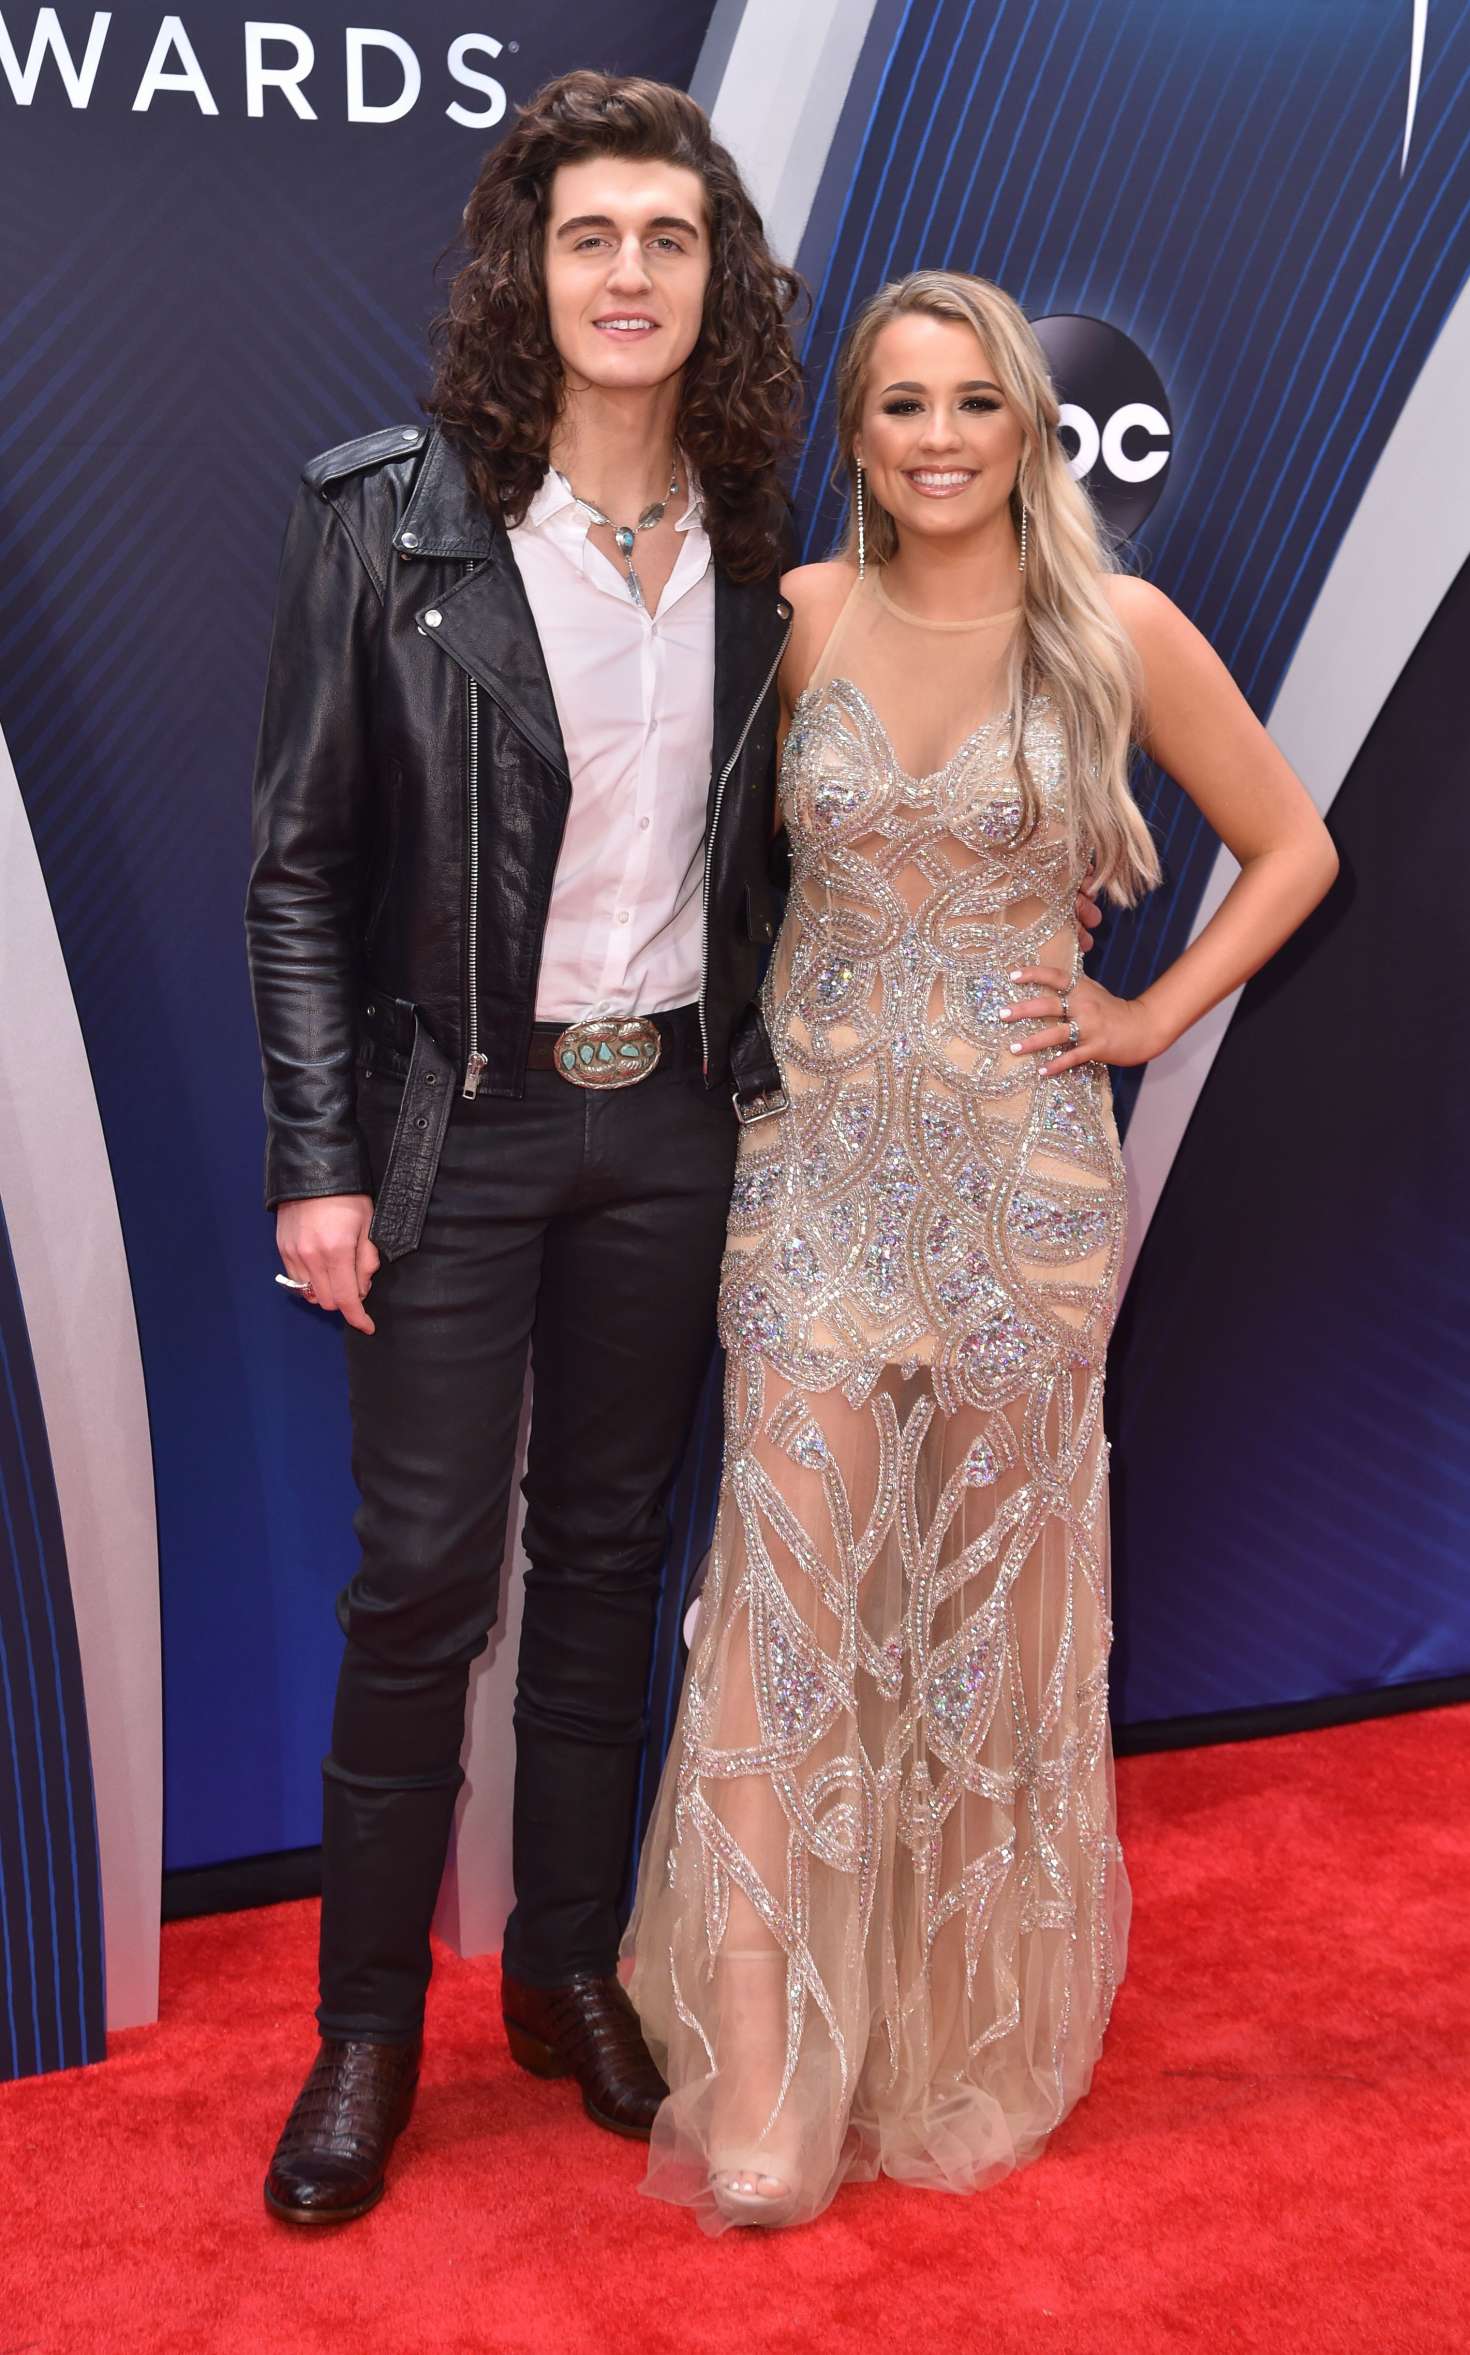 Cade Foehner and Gabby Barrett at the 2018 CMA Awards
